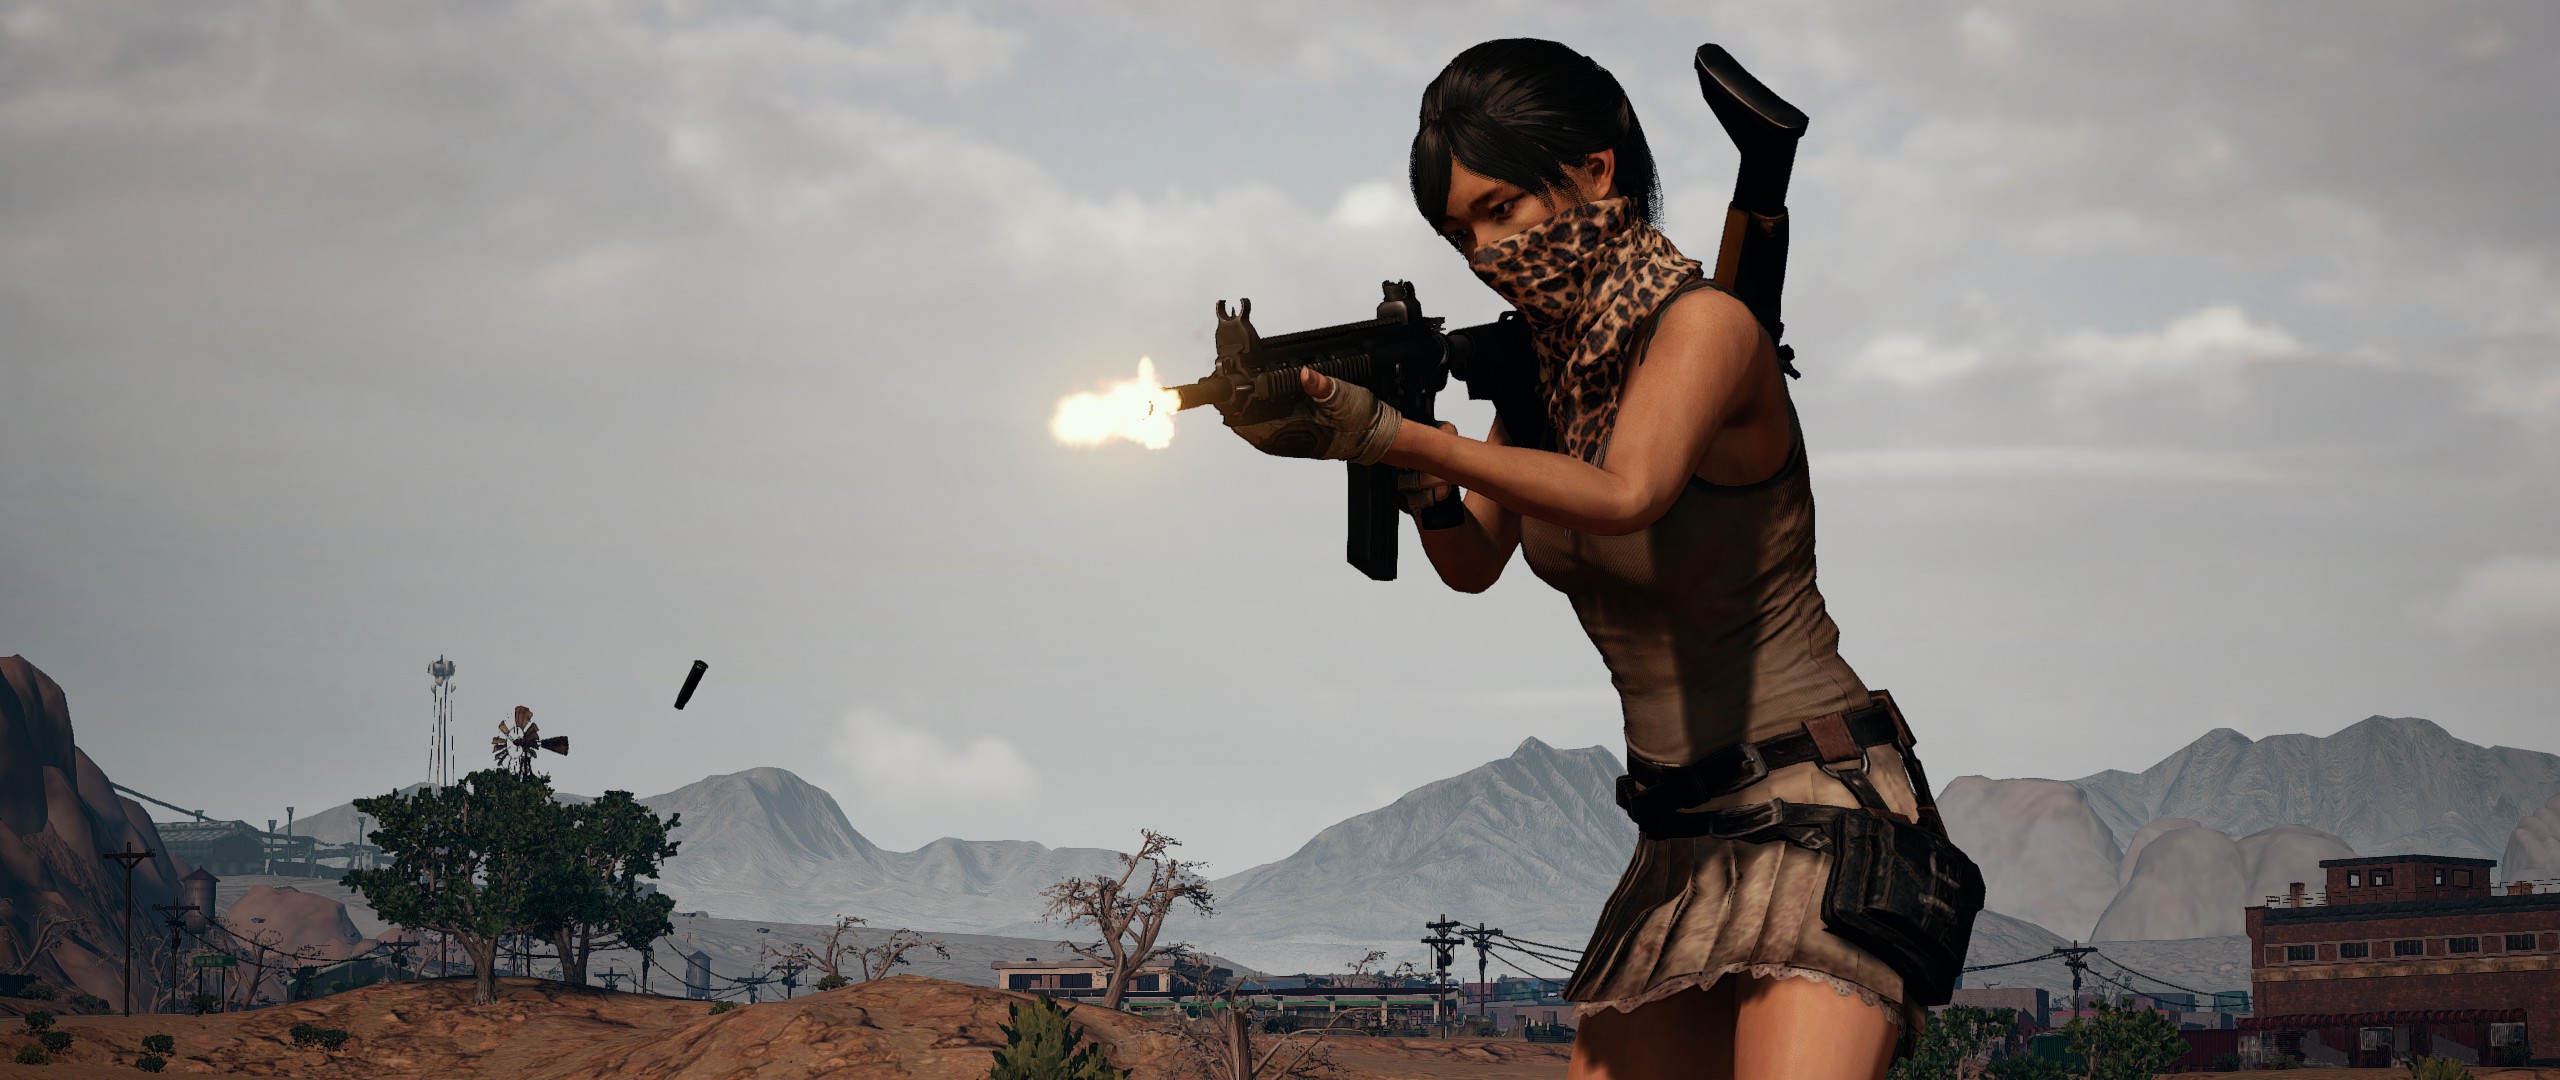 Player Unknown Battleground PUBG M4A4 Girls With Guns 2560x1080